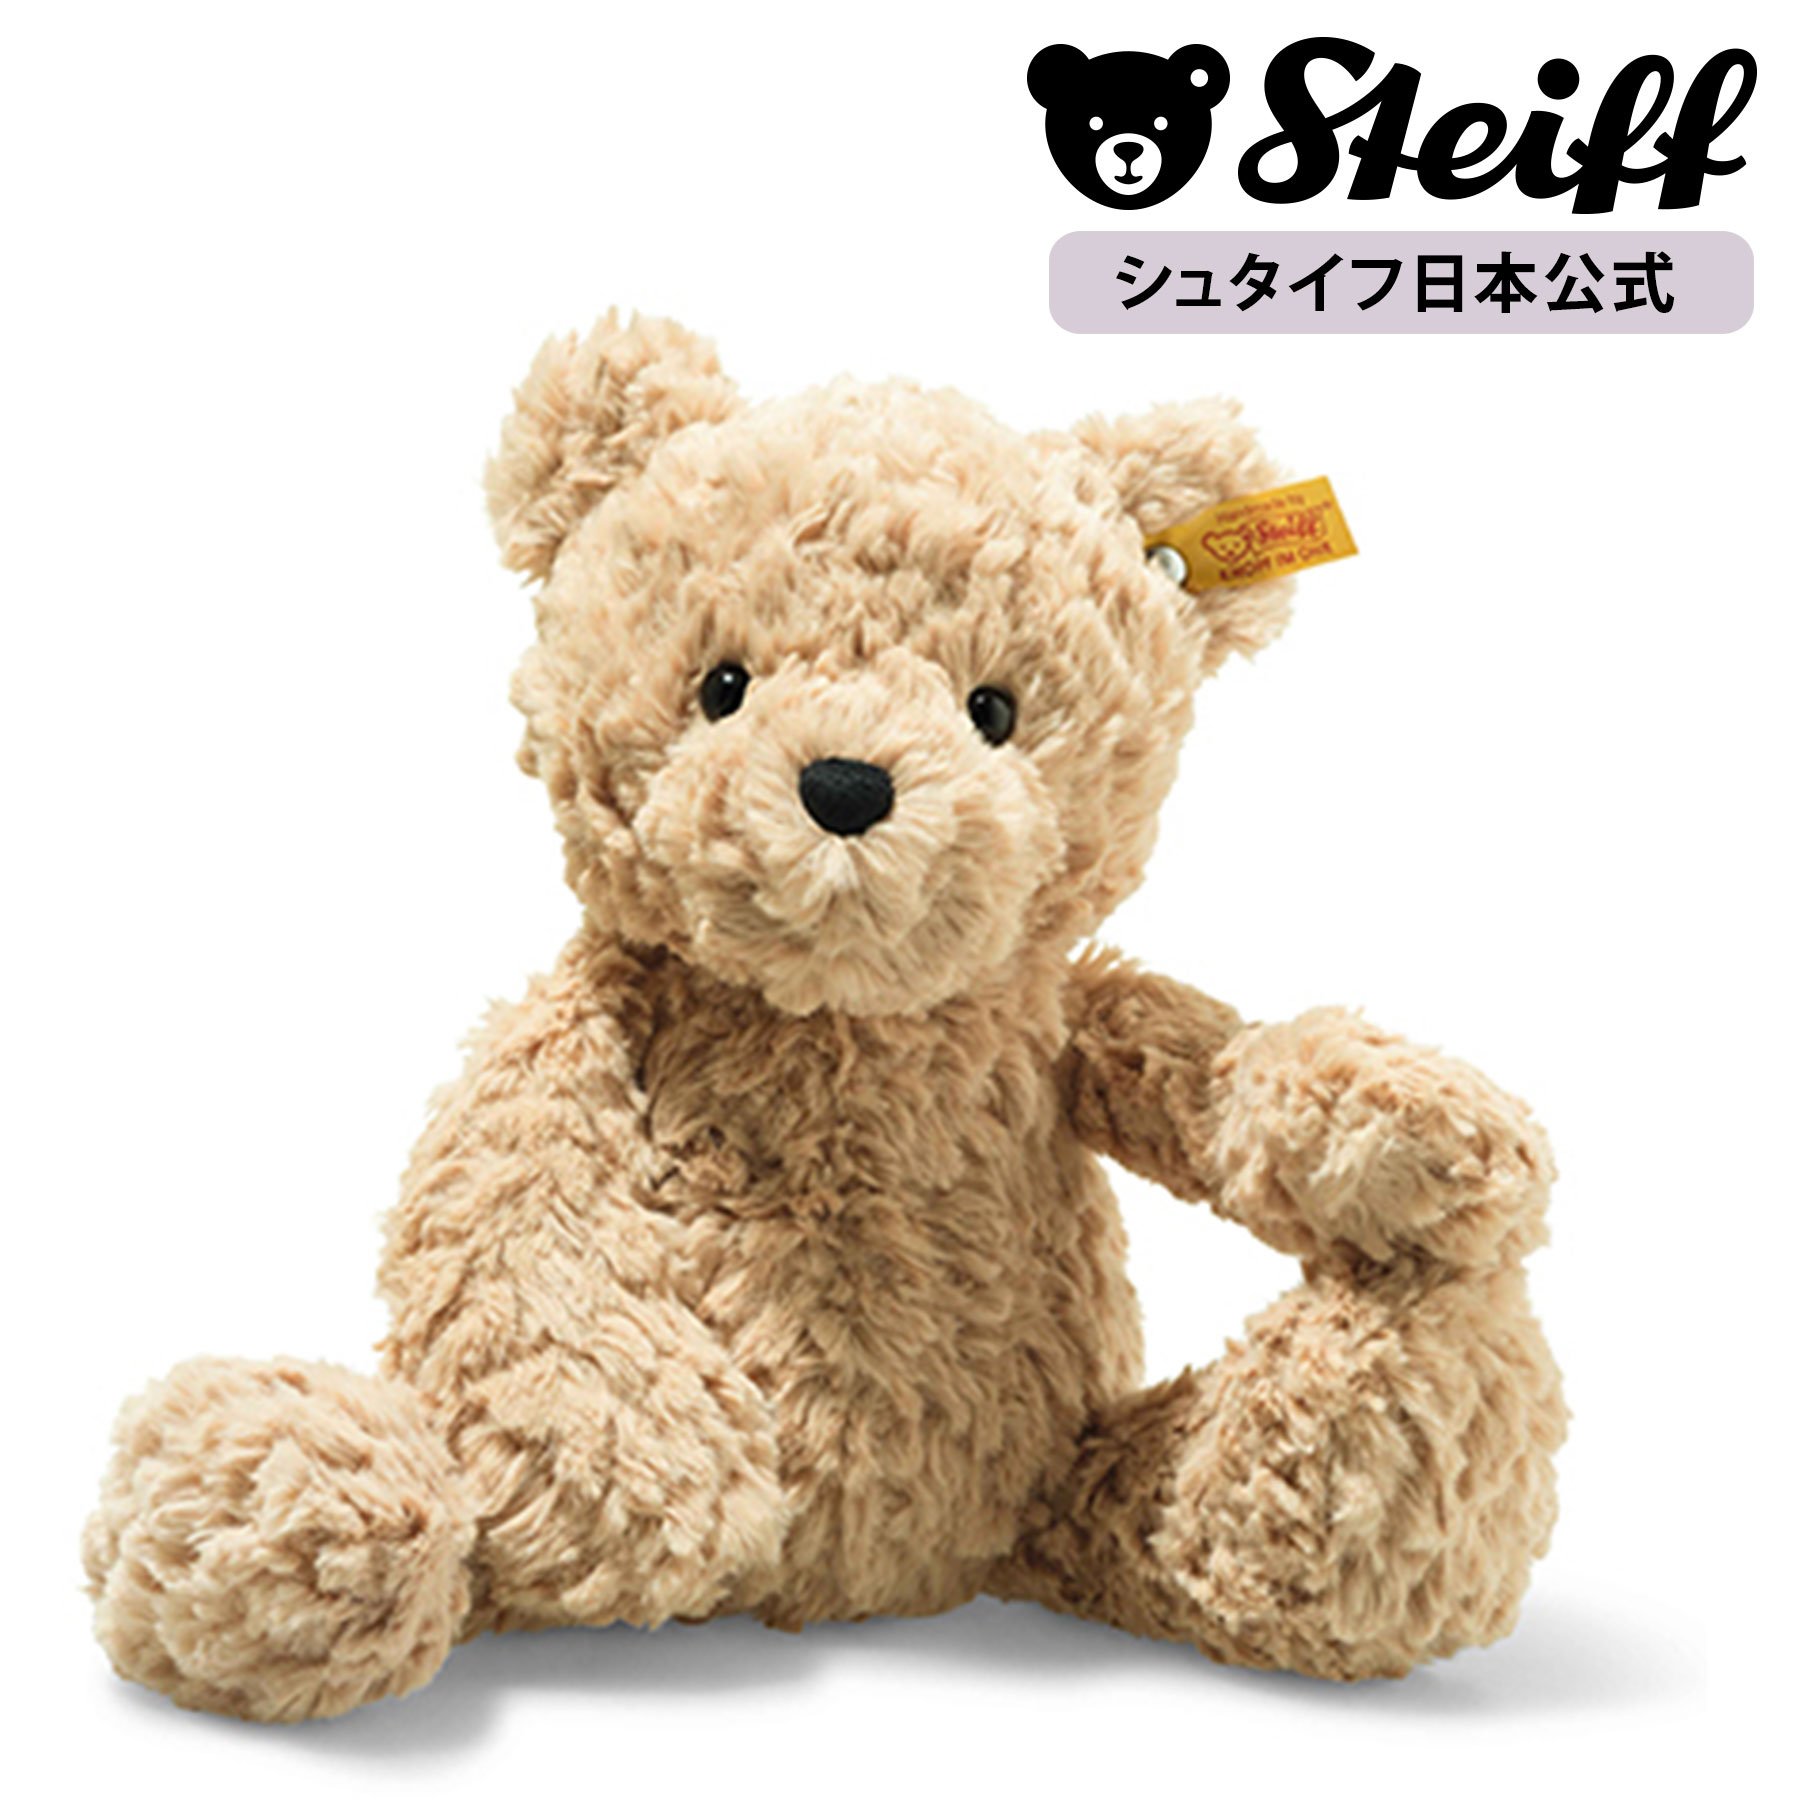 テディベアのジミー 30cm ぬいぐるみ テディベア くま クマ 熊 ベア teddybear bear プレゼント ギフト 贈り物 出産祝い steiff シュタイフ ドイツ